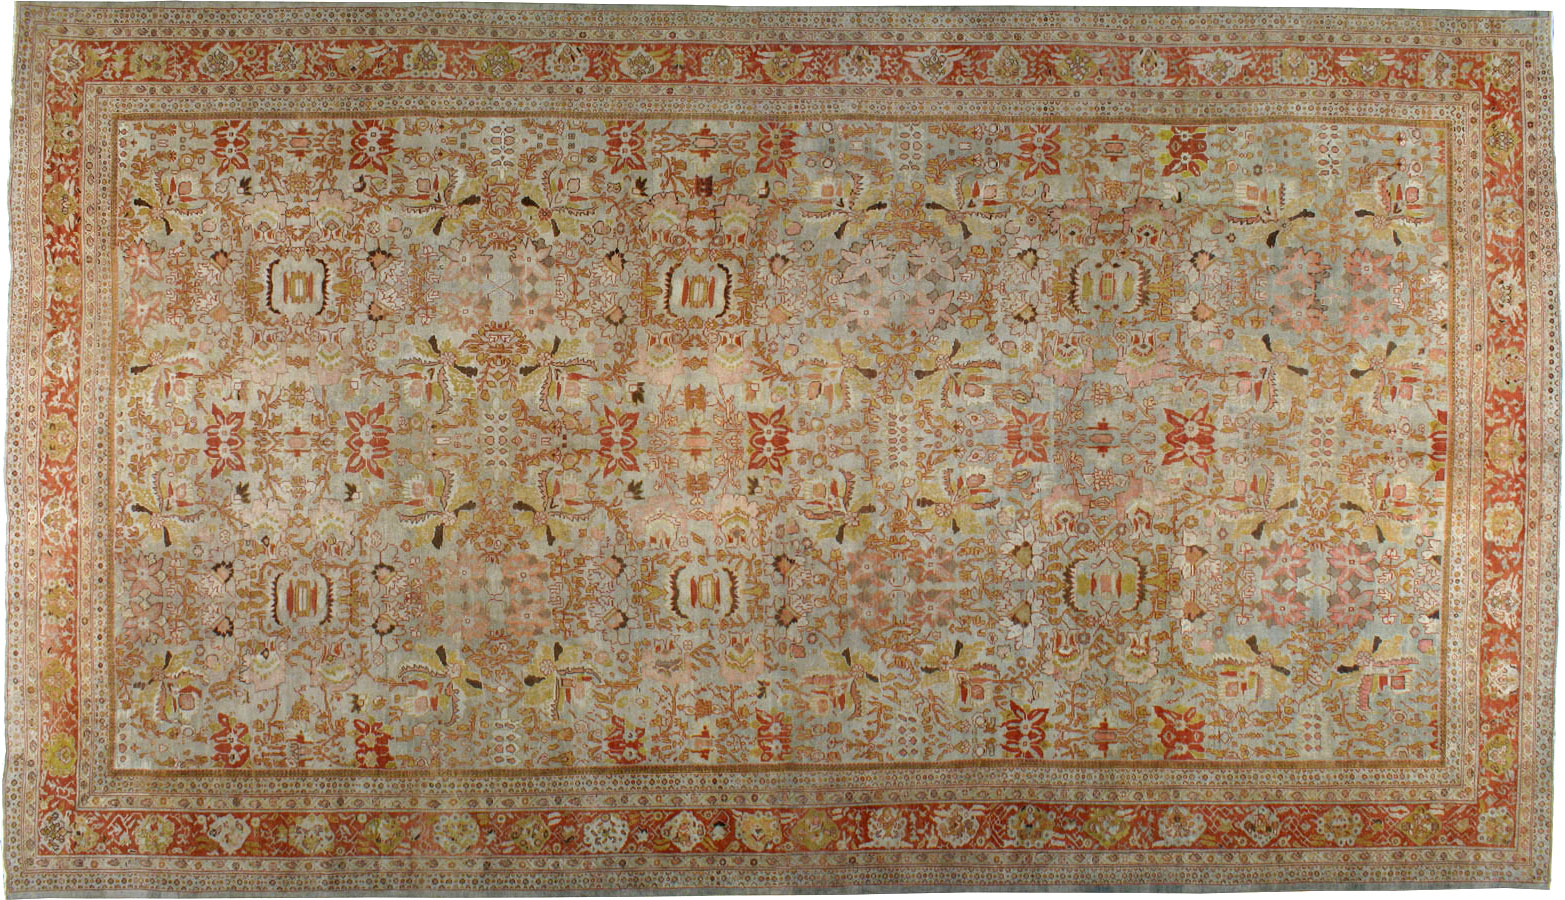 Antique sultan abad Carpet - # 8700